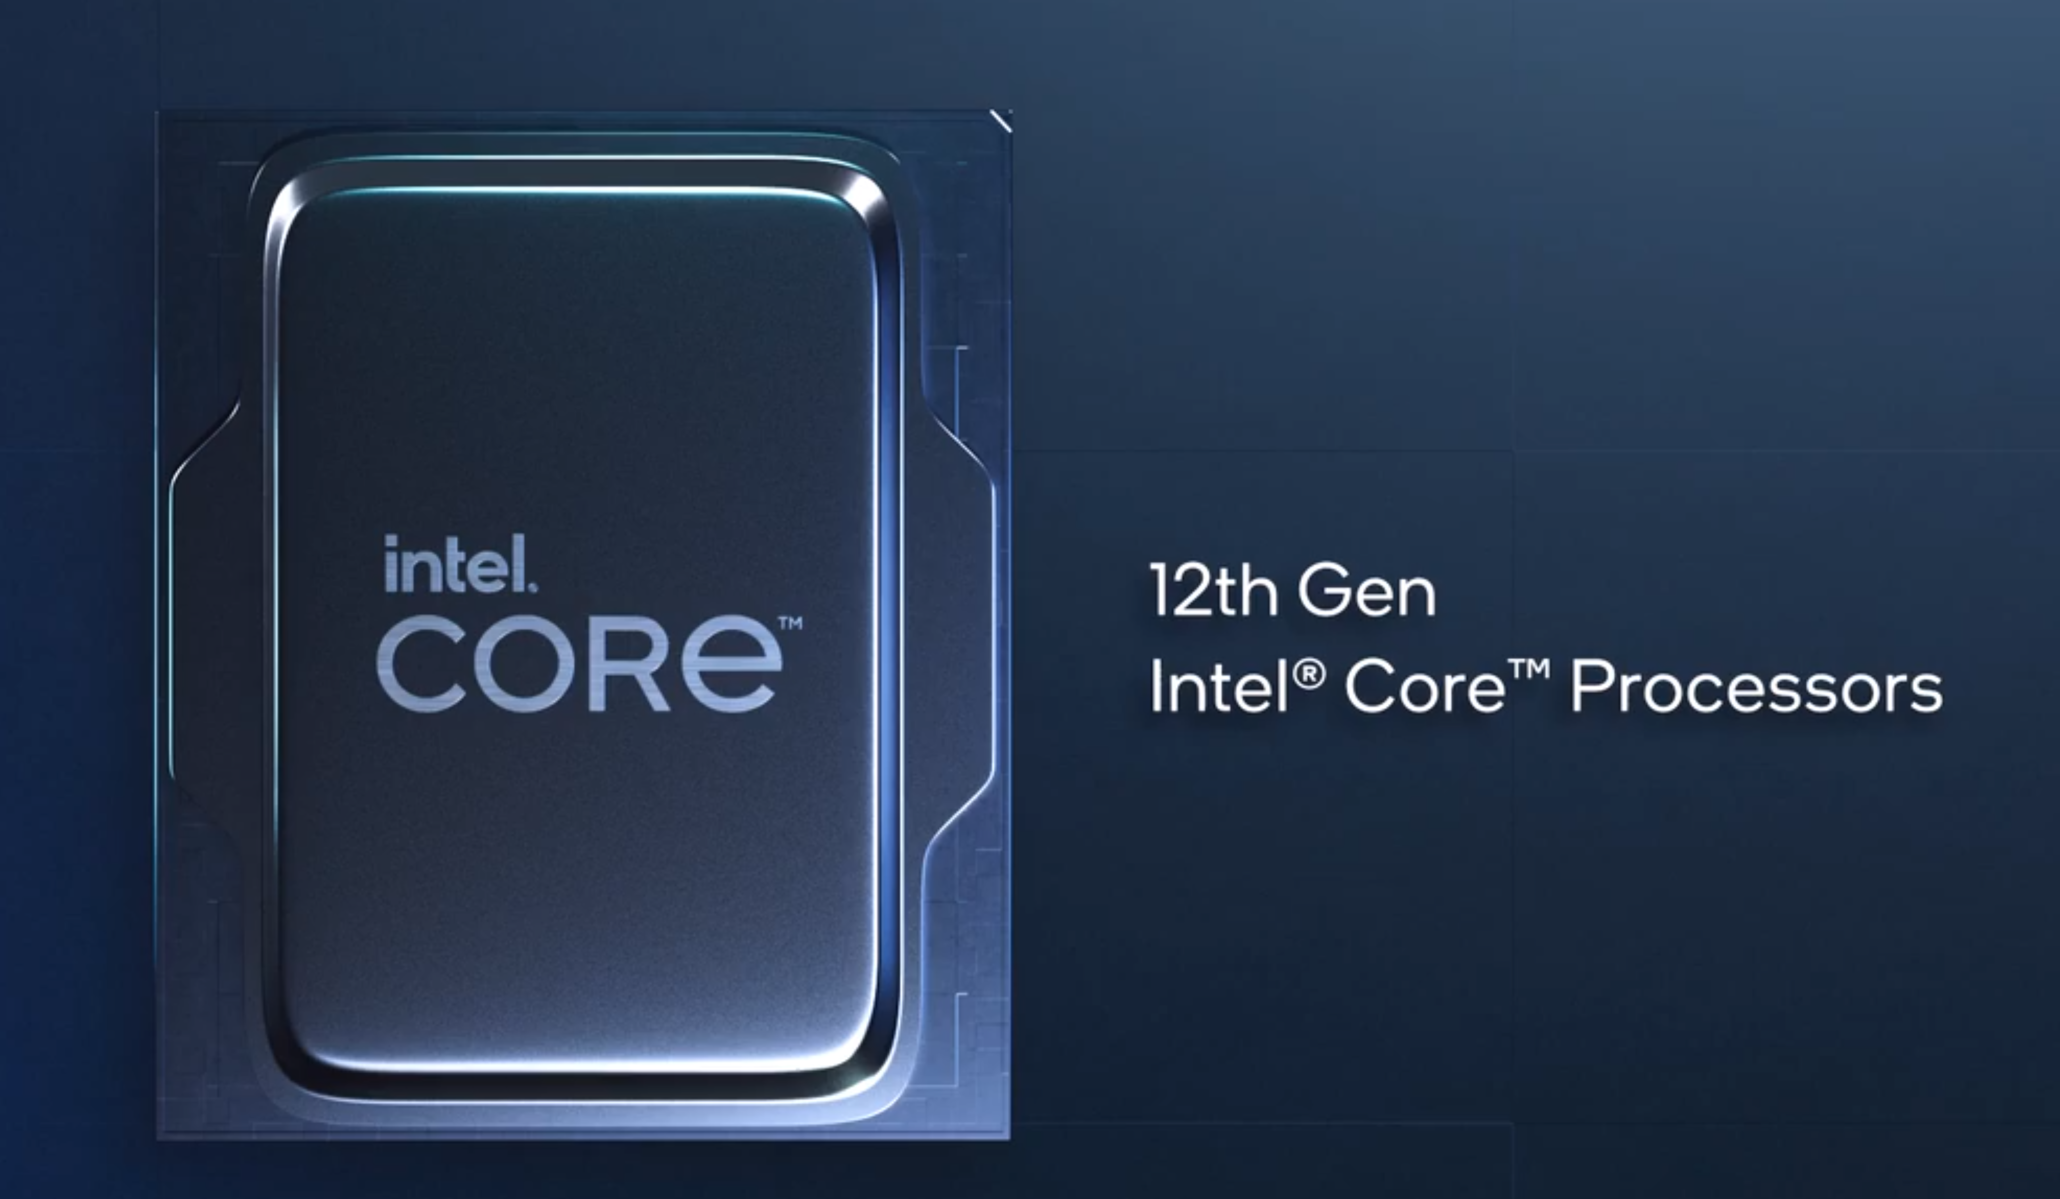 Procesor Intel Core  i9-12900 je speciln uren pro zkladn desky s patic LGA1700 z ady Intel 600 Series, kdy se pyn 12 jdry s maximlnm taktem a 4,9 GHz diky TB 3.0 technologii.